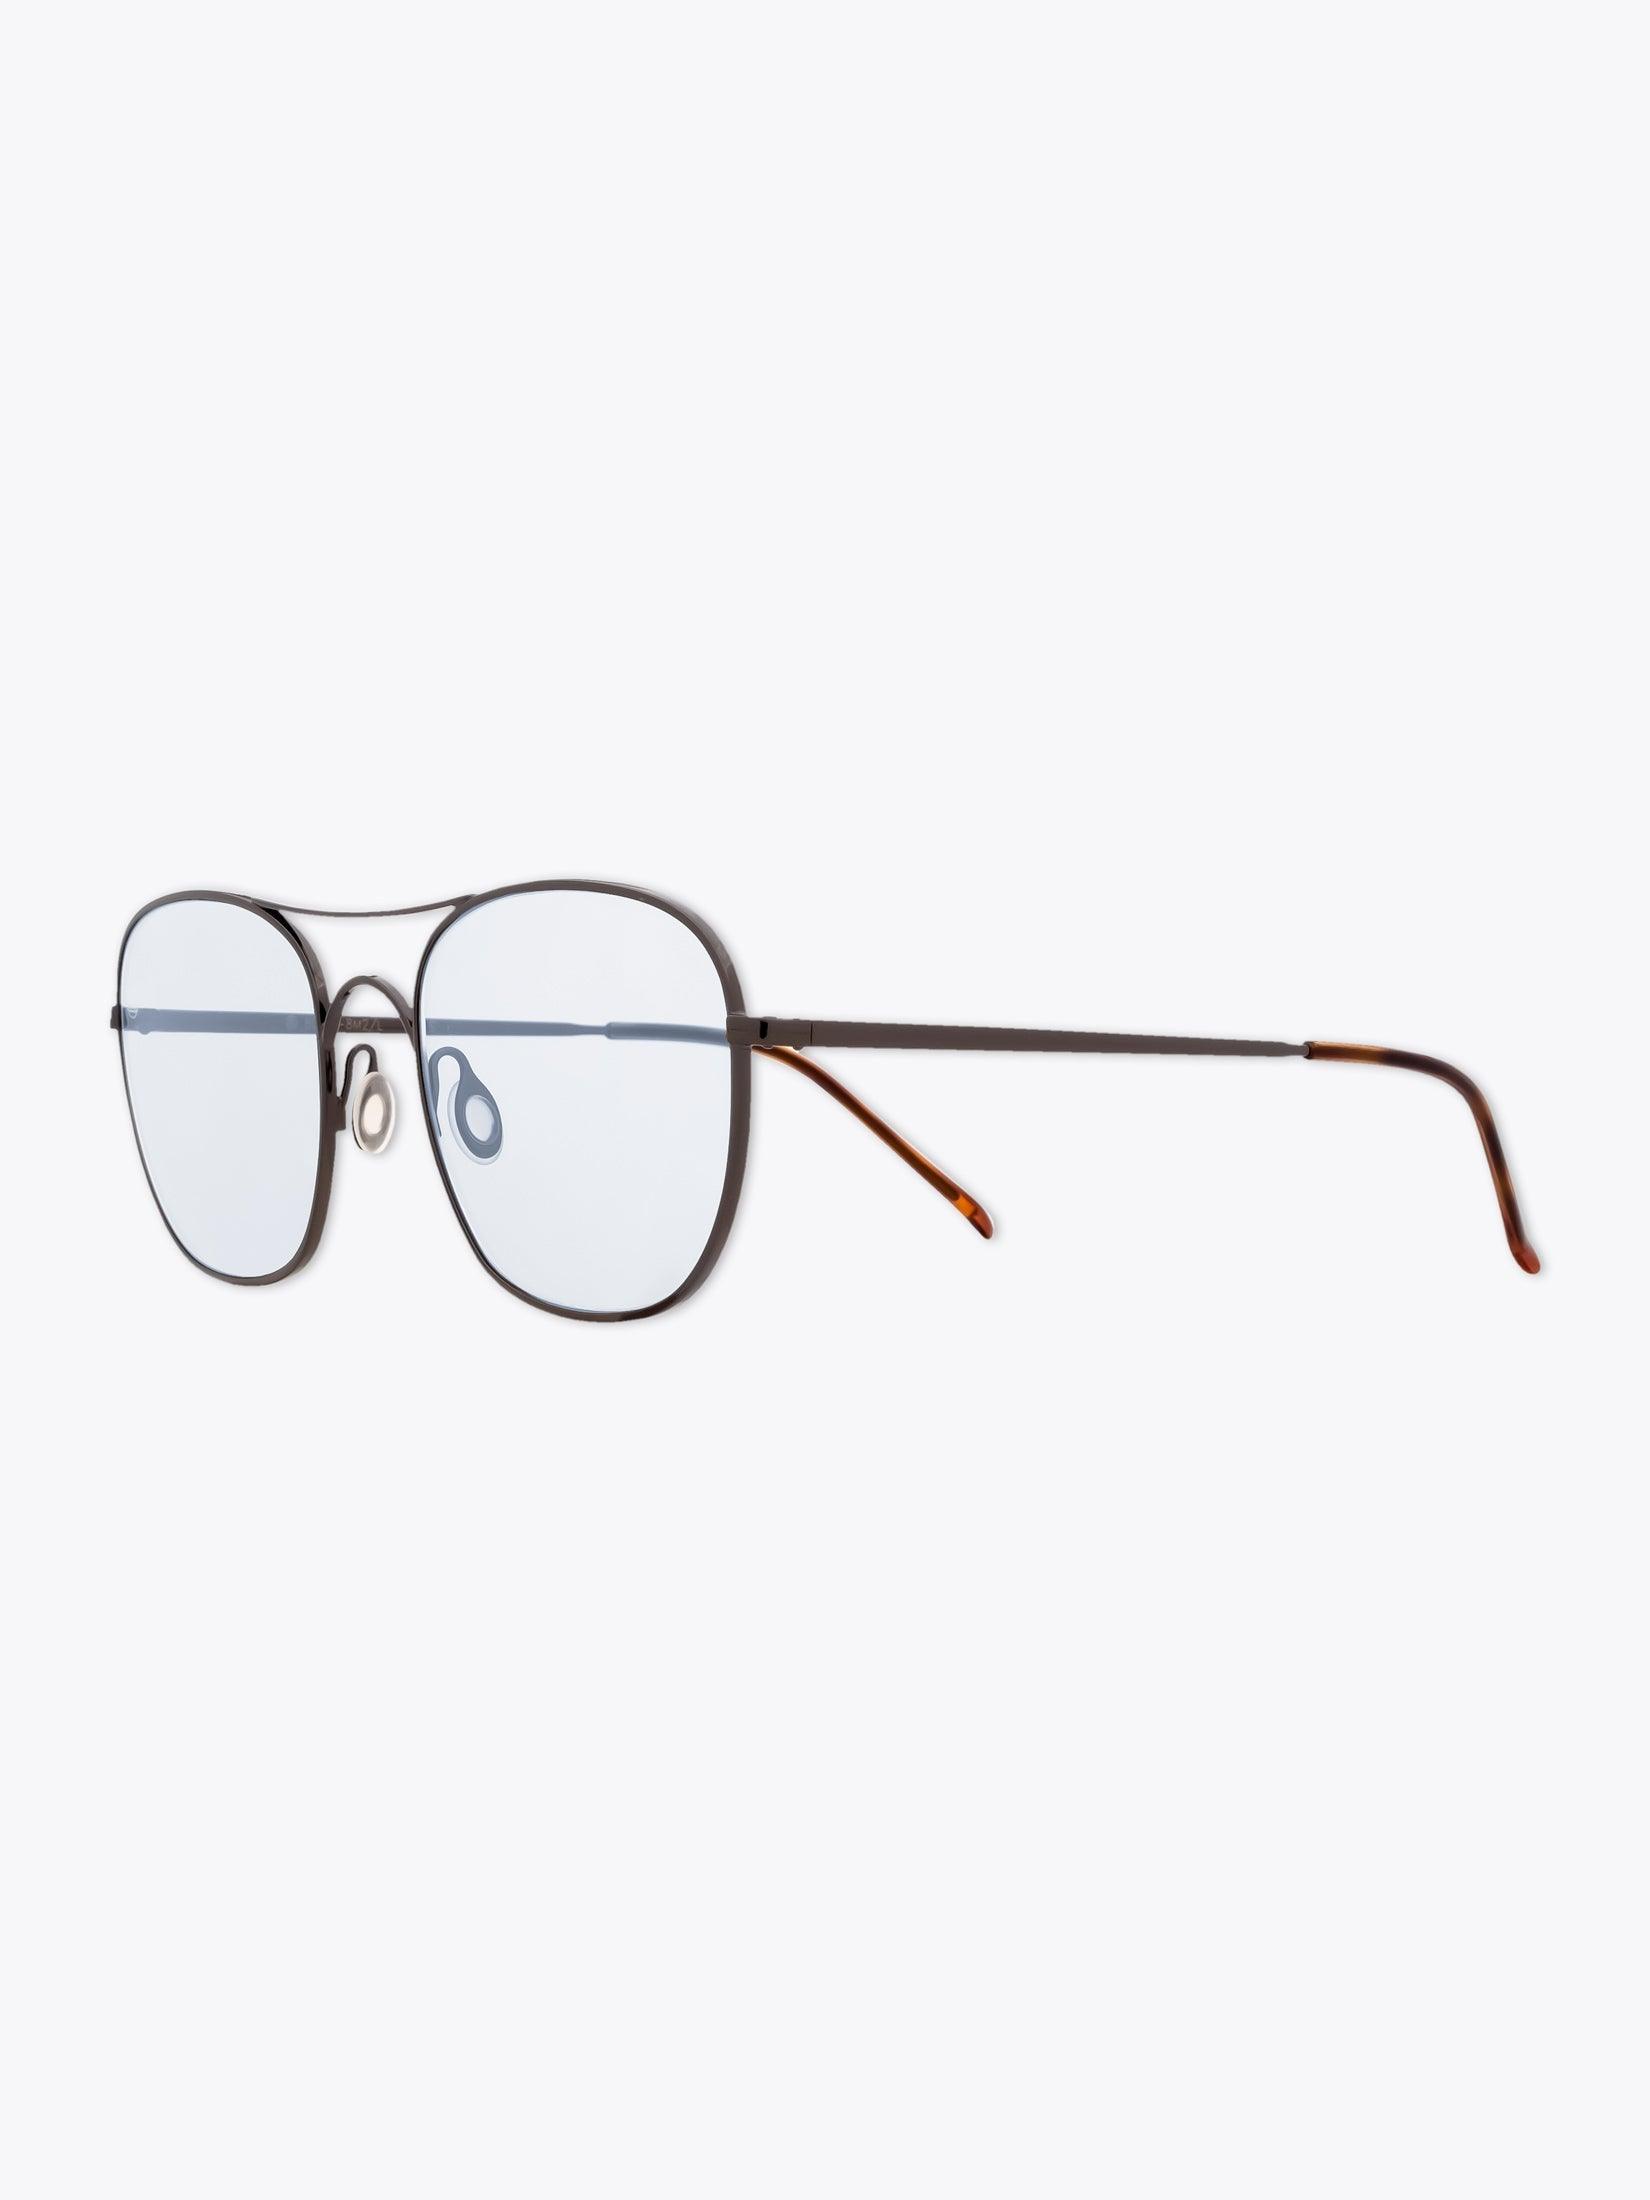 8000 Eyewear 8M2/L Sonnenbrille Quadratisch Graphit